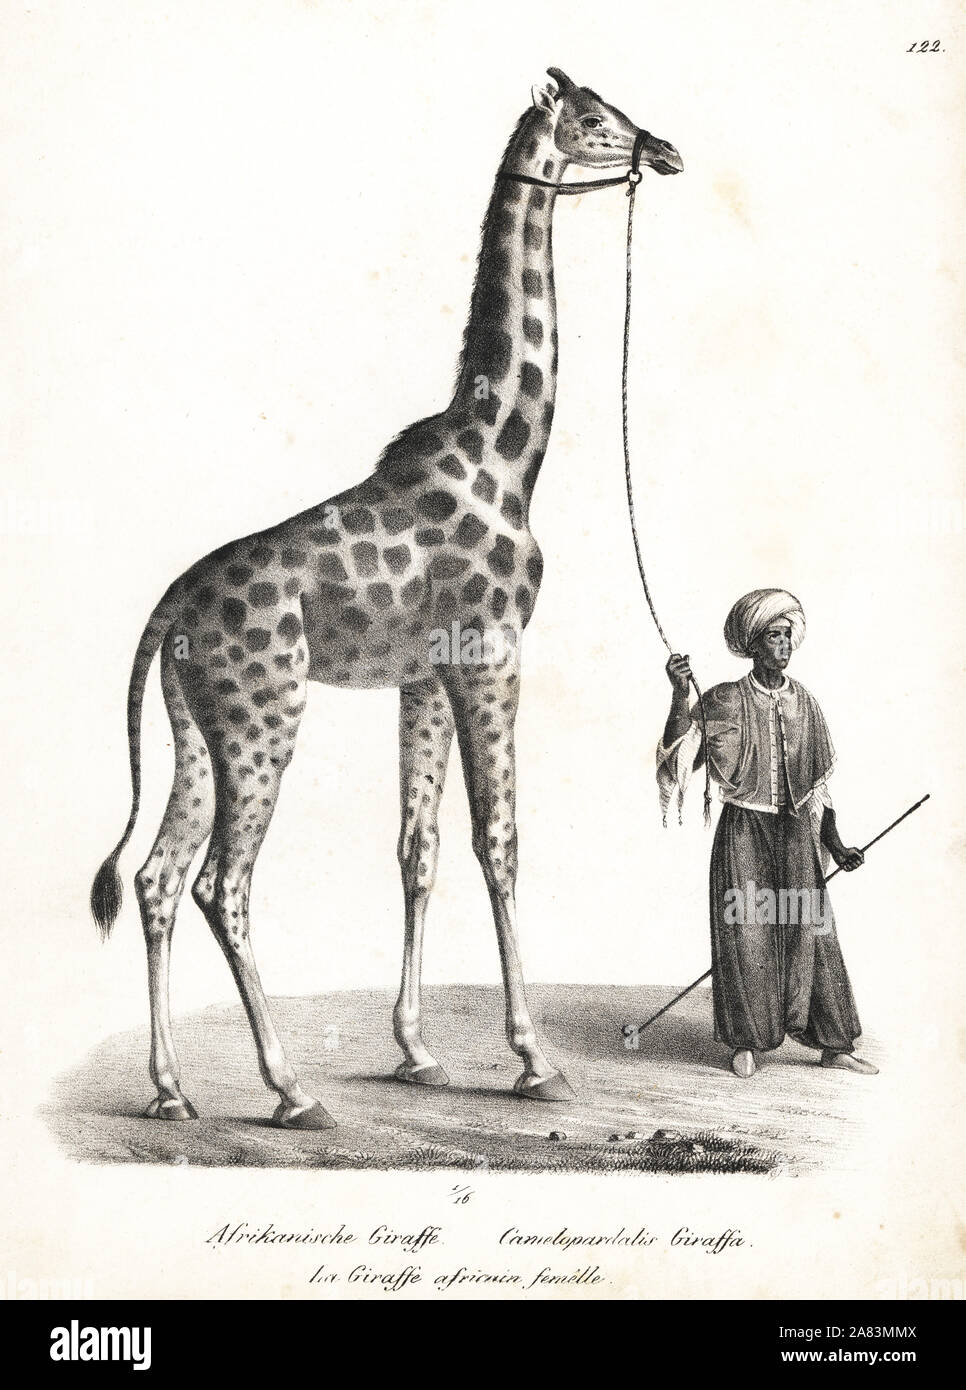 Giraffen, Giraffa Camelopardalis, weiblich. Von Karl Joseph Brodtmann von Heinrich Rudolf Schinz illustrierte Naturgeschichte der Menschen und der Tiere, 1836 Lithographie. Stockfoto